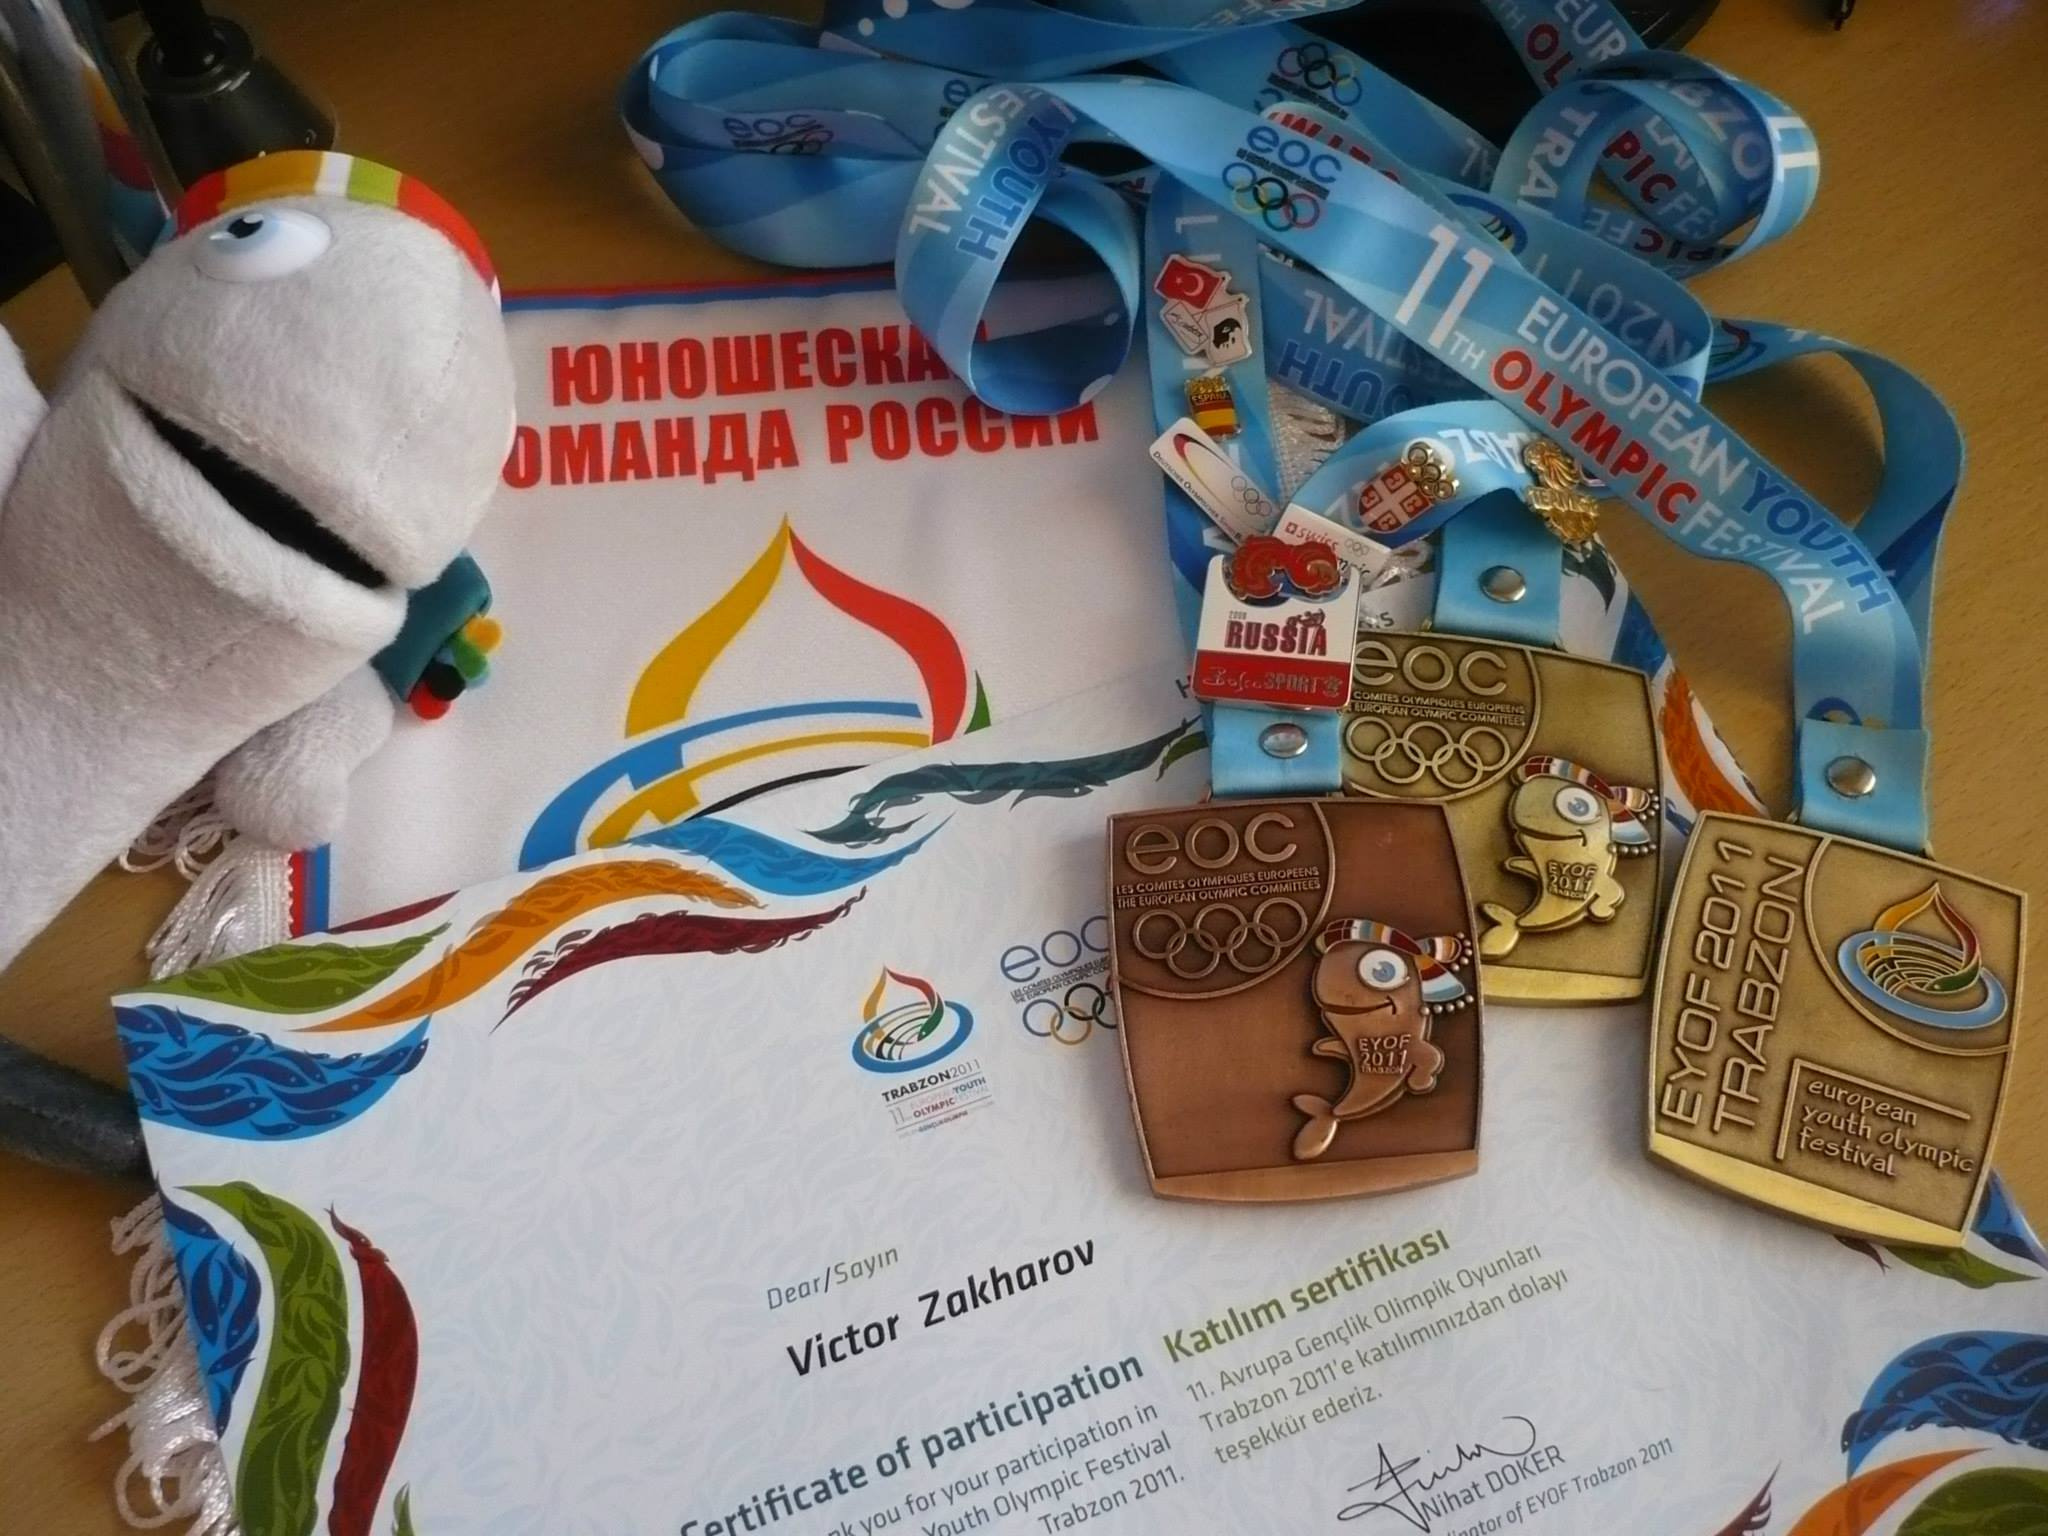 Награды, полученные Виктором на Олимпийском фестивале в Трабзоне